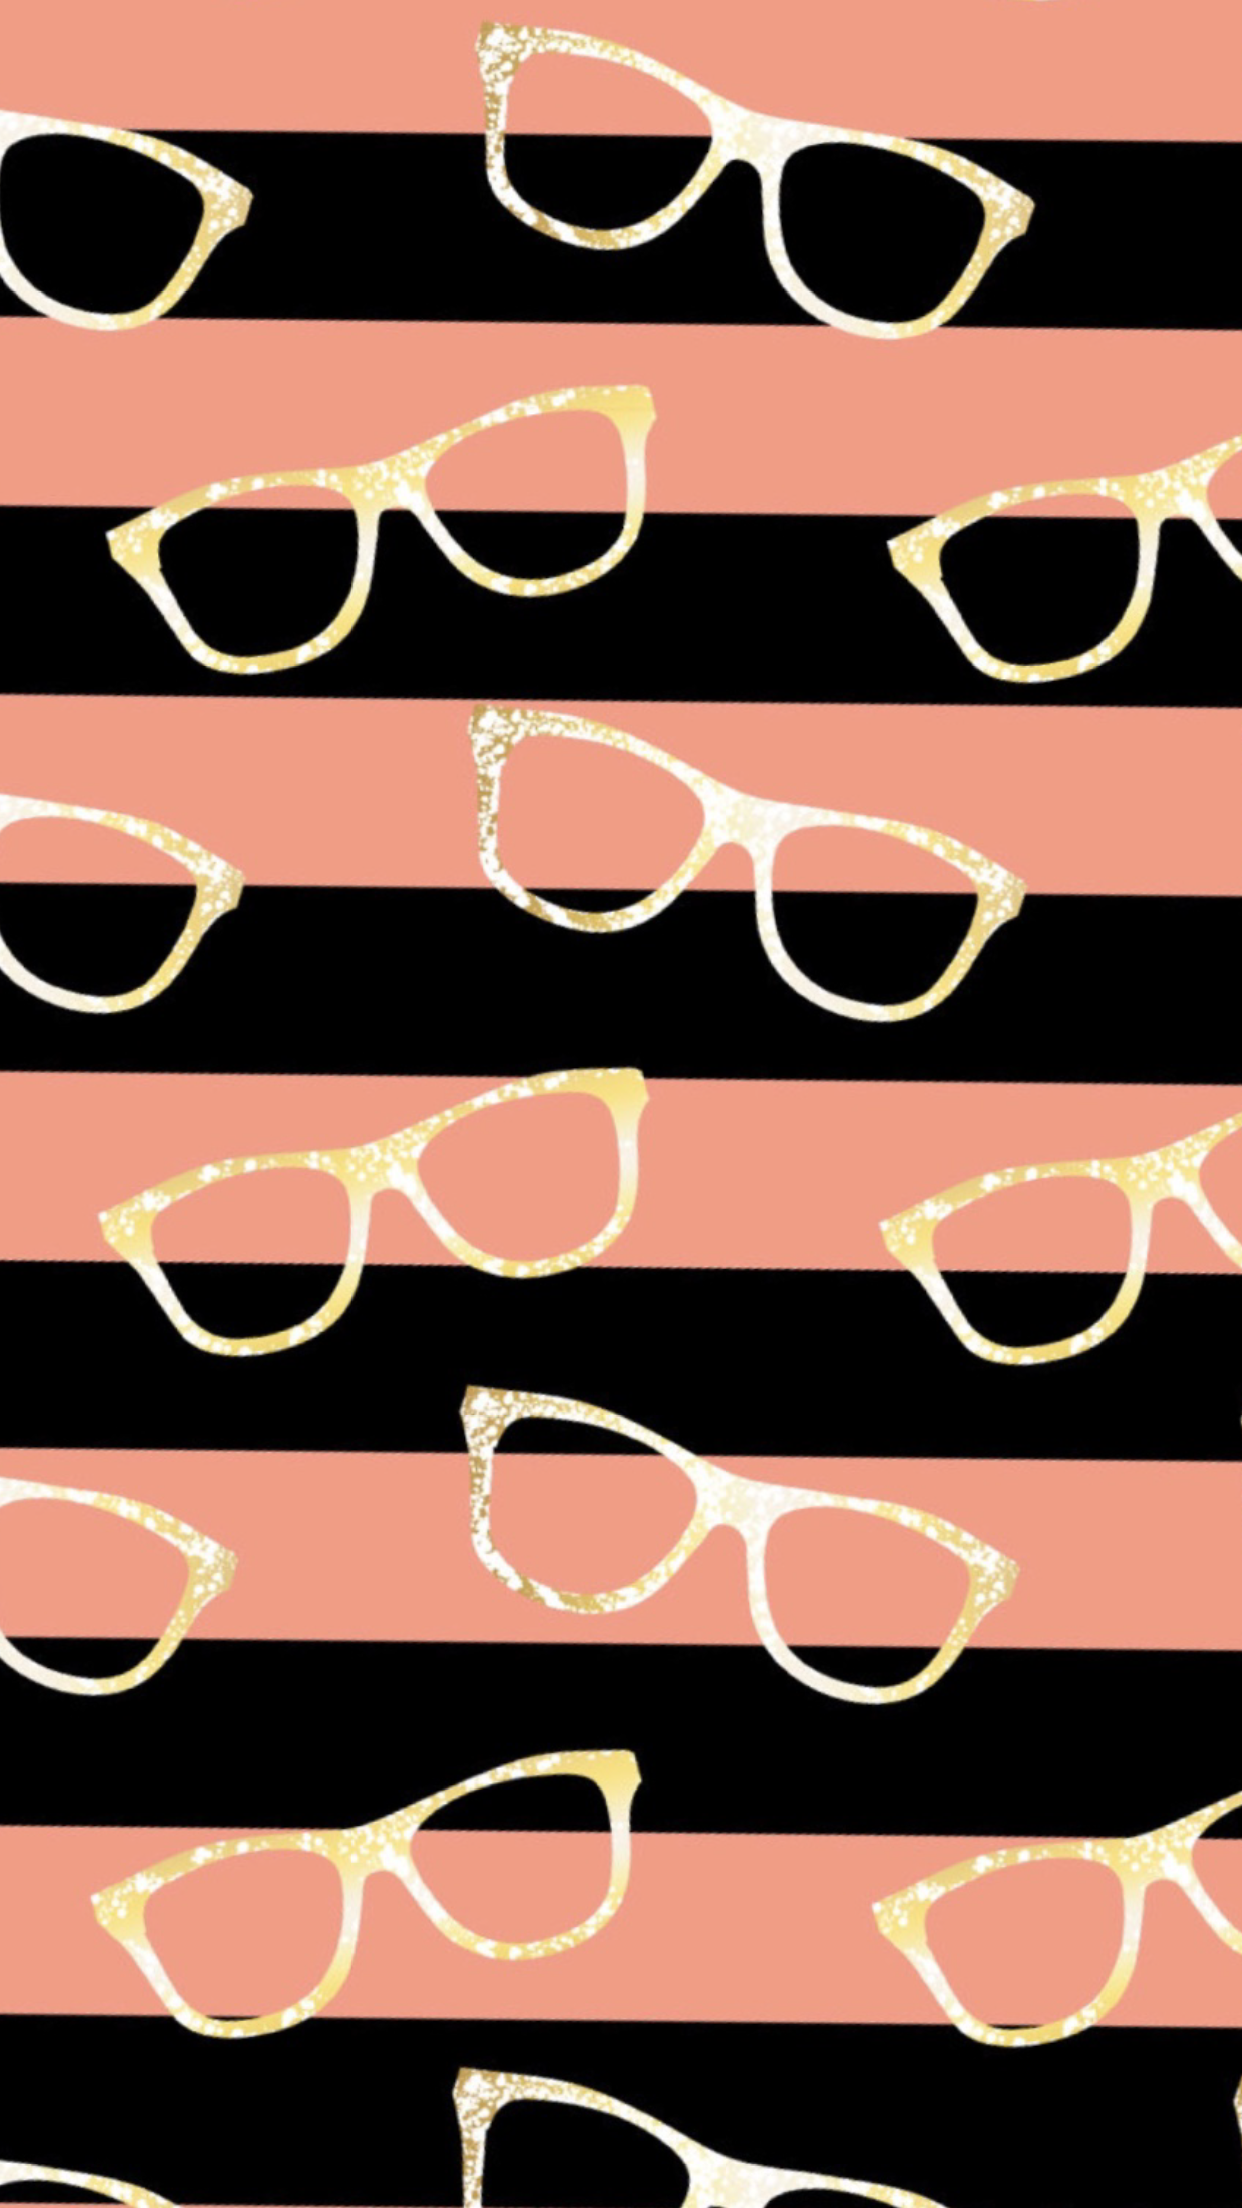 Glasses wallpaper, iPhone wallpaper .com